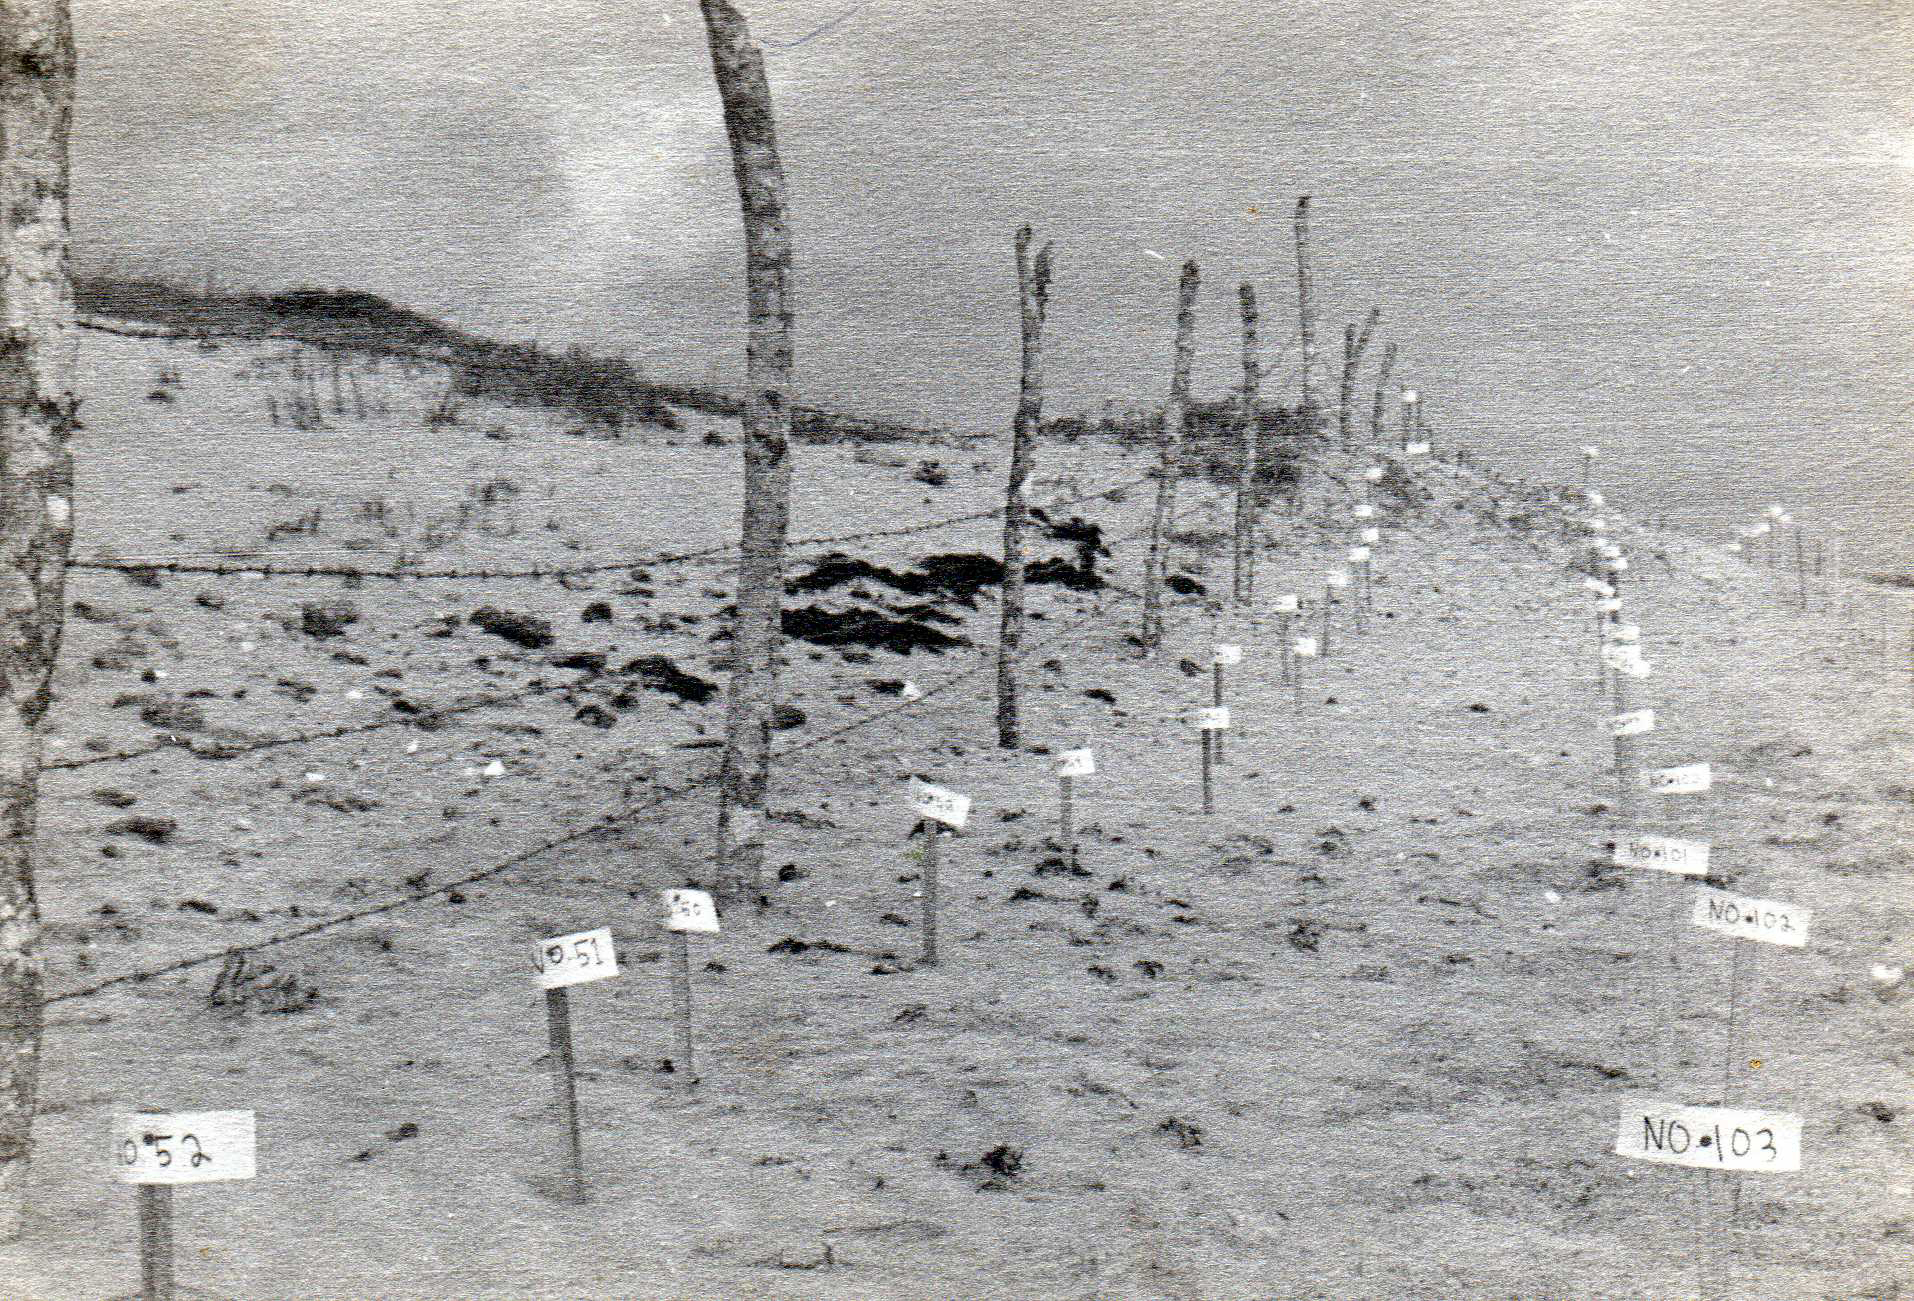 Sea turtle nests at Rancho Nuevo 1960s